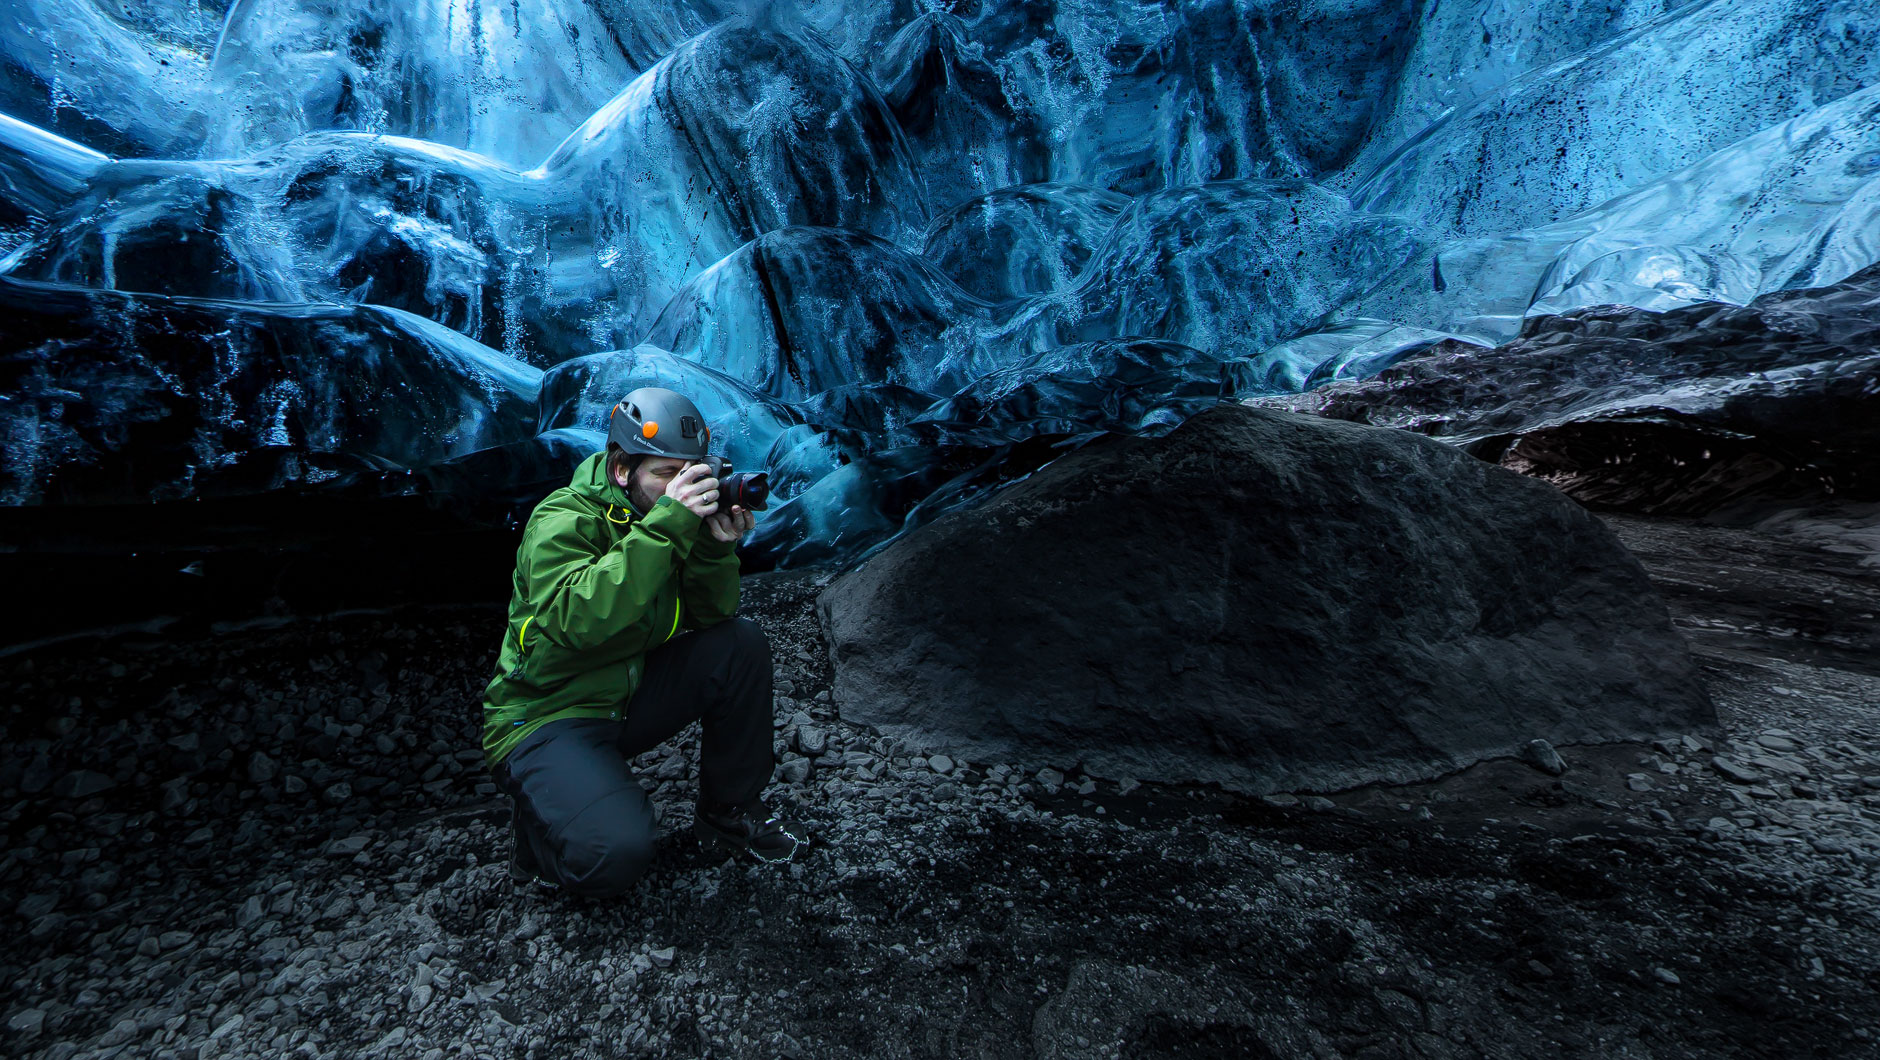 Höhle in einem isländischen Gletscher. Ein Fotograf fotografiert das blaue Eis.